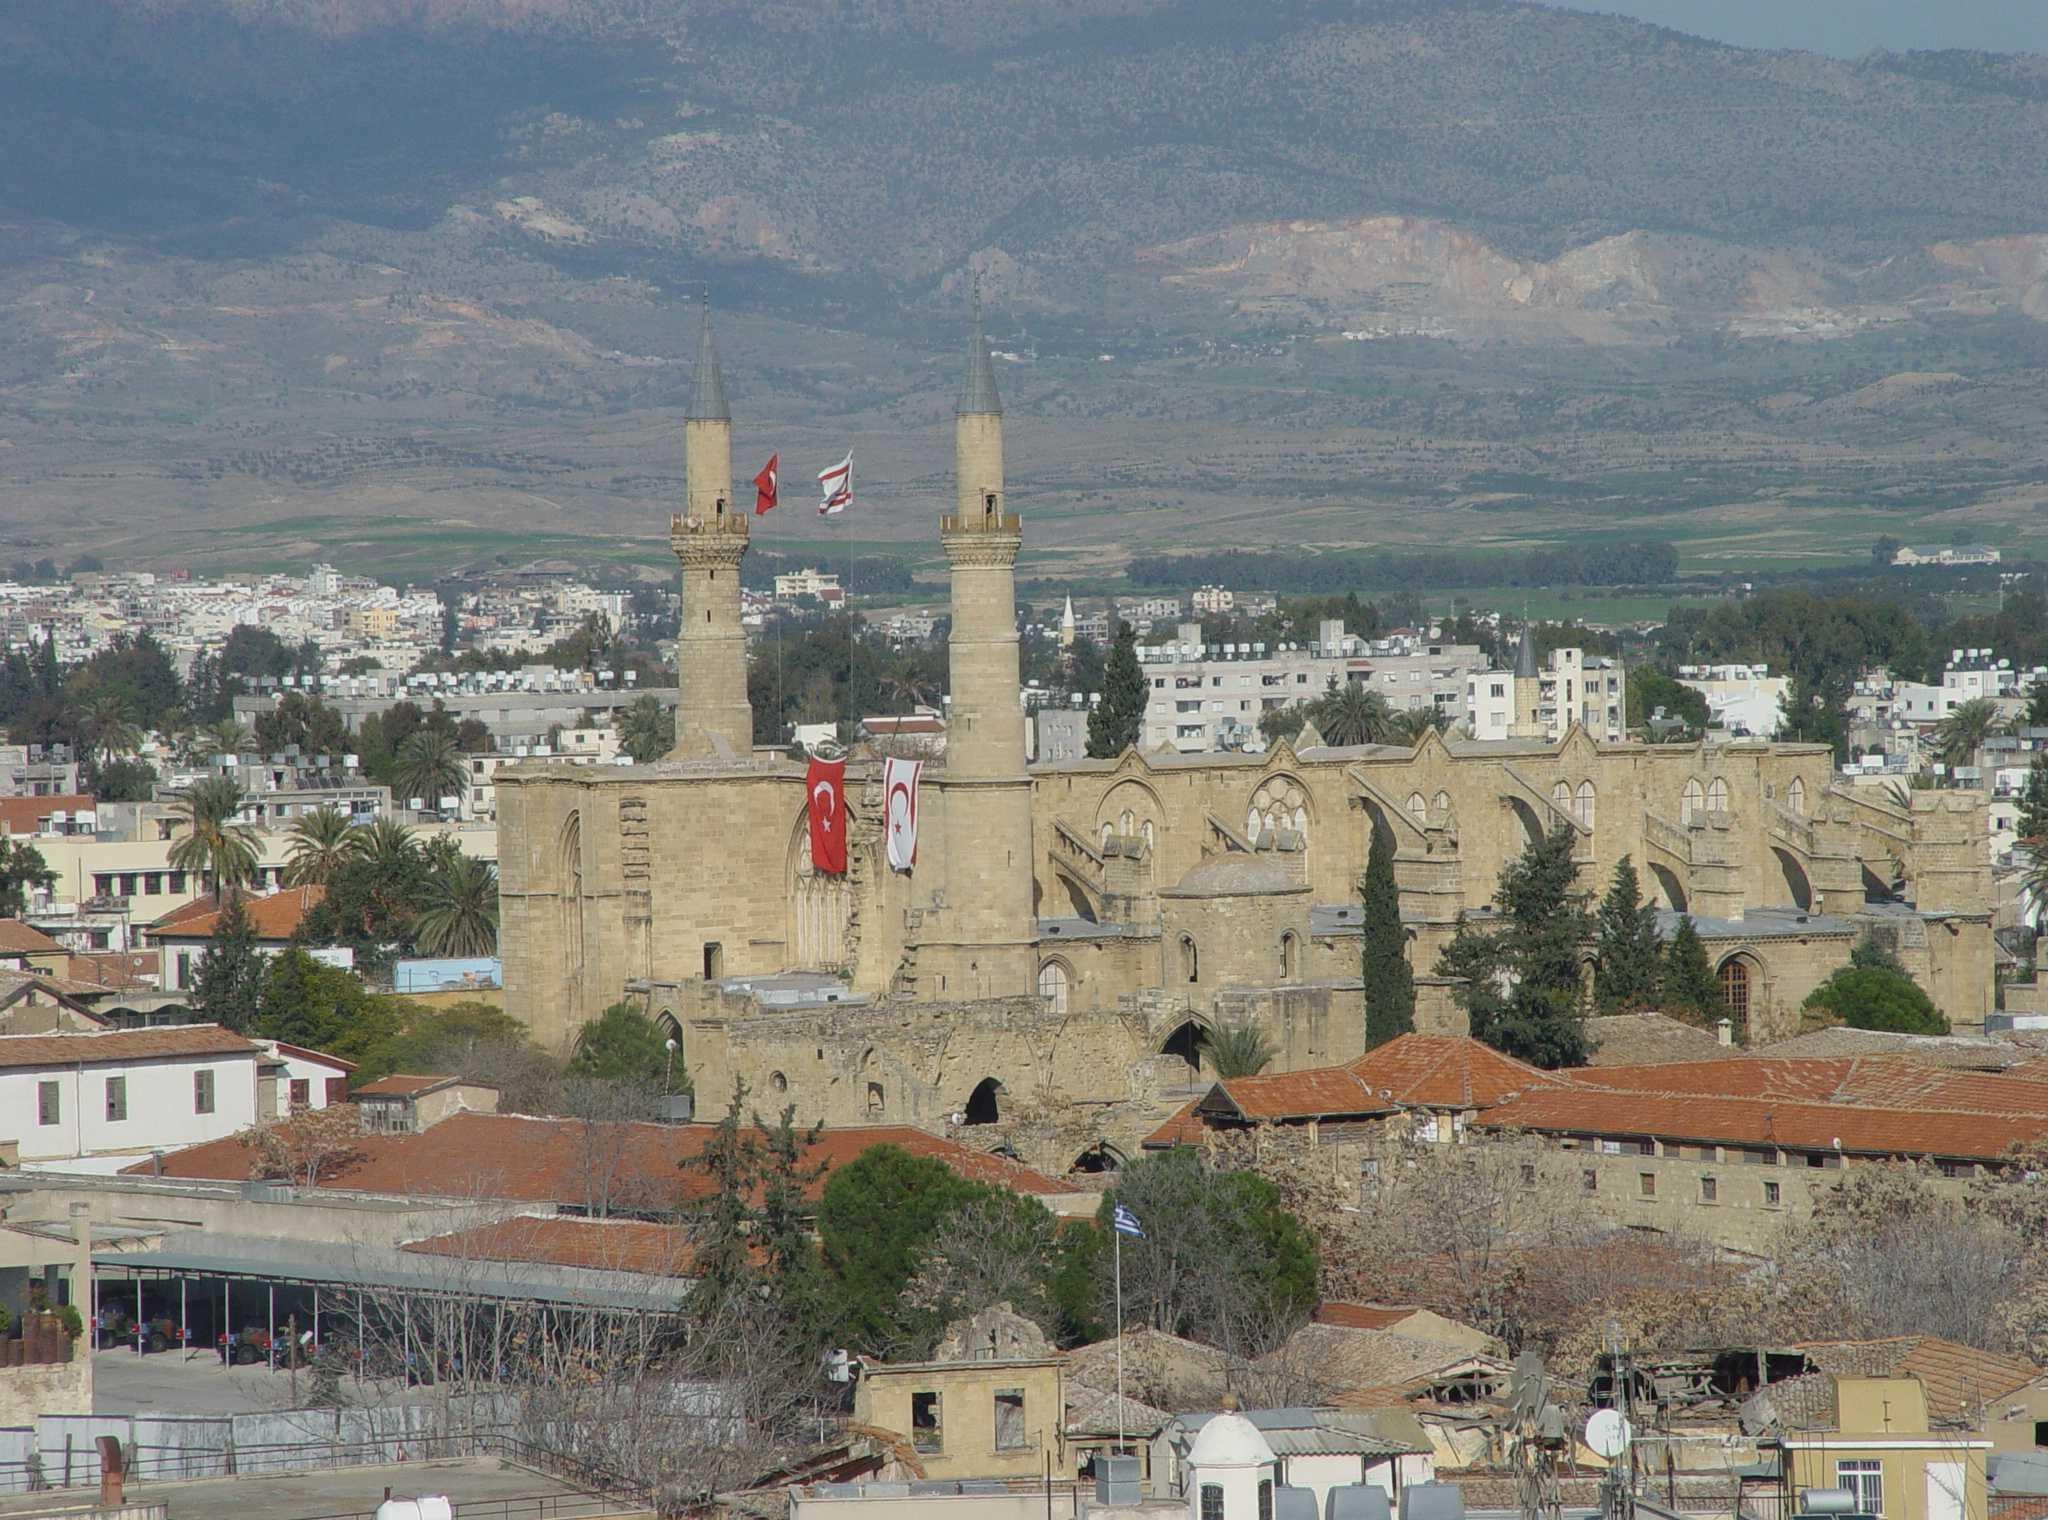  Бывший собор св. Софии, превращённый ныне в мечеть, в турецком секторе Никосии. На переднем плане видна разделительная линия